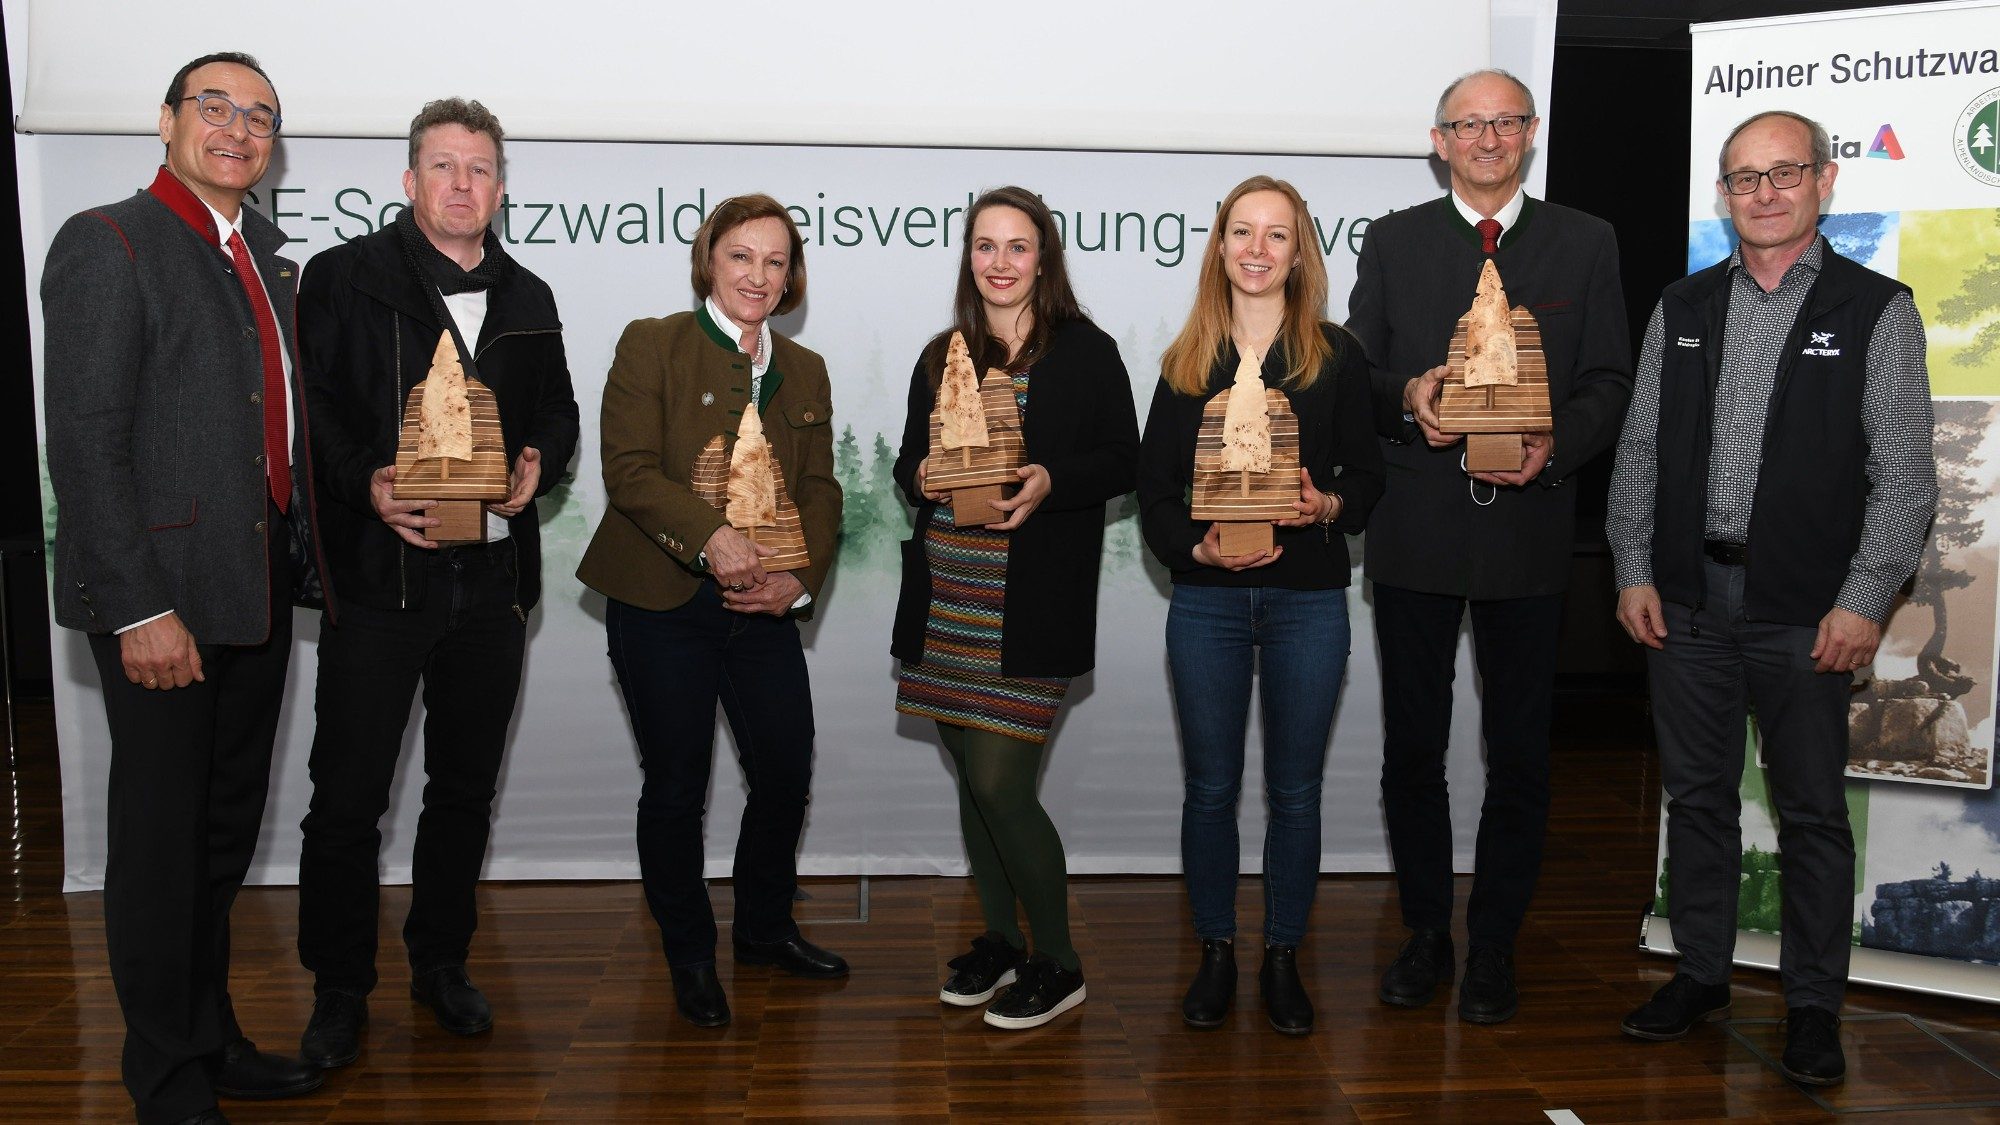 01-helvetia-alpiner-schutzwaldpreis-2018